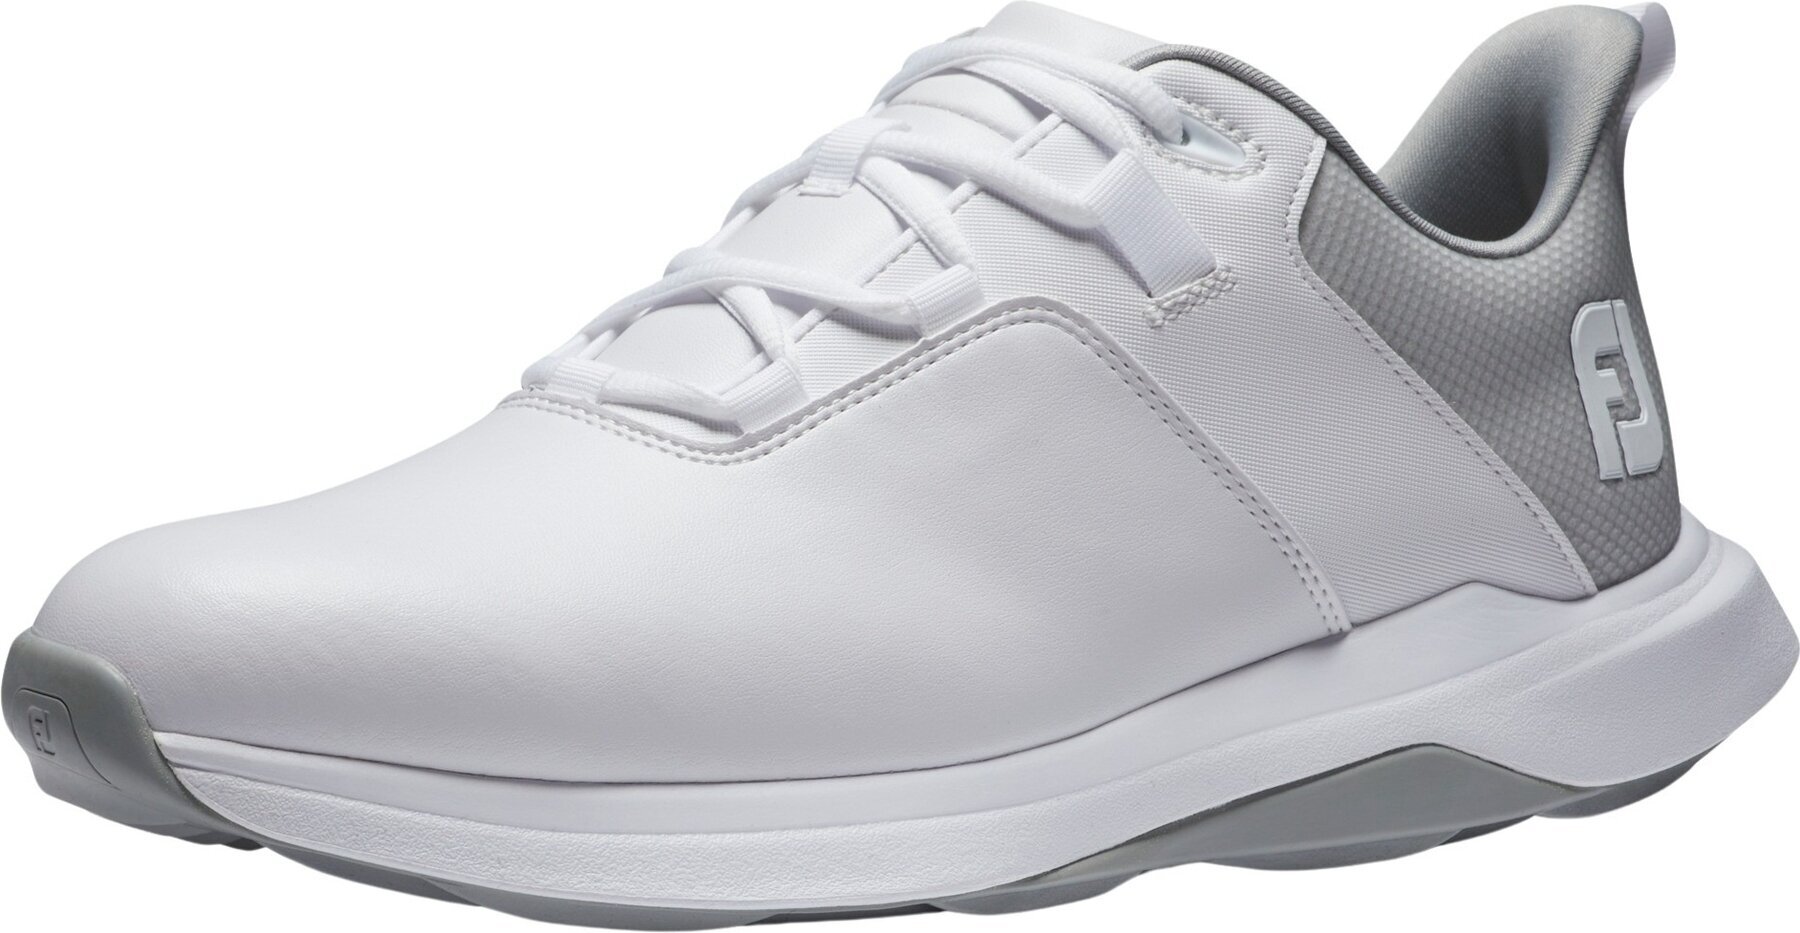 Chaussures de golf pour hommes Footjoy ProLite Mens Golf Shoes White/Grey 43